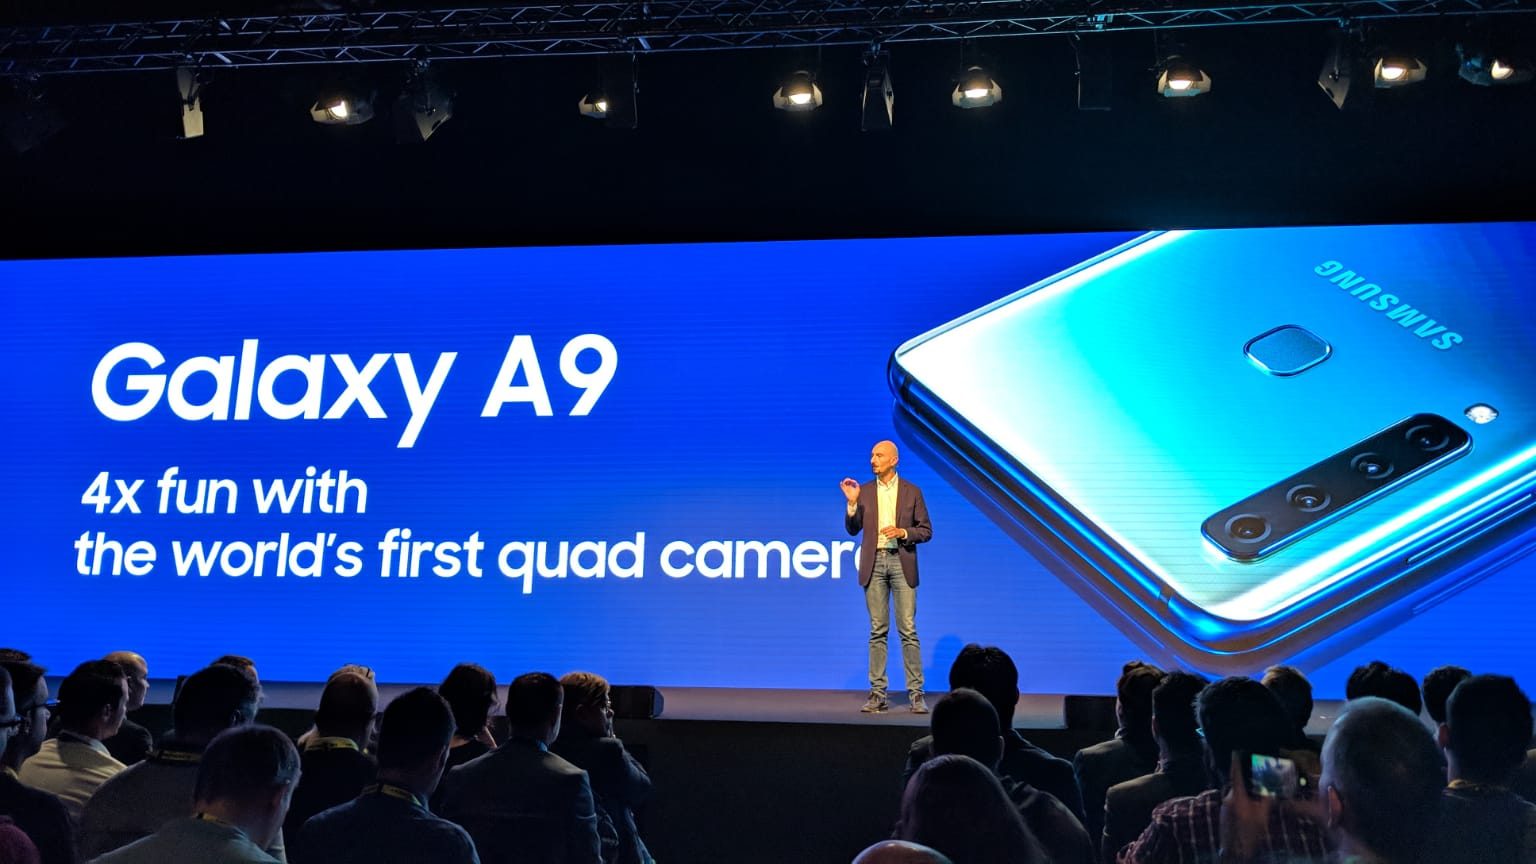 Samsung Galaxy A9 ufficiale: caratteristiche, prezzo e disponibilità dello smartphone con quadrupla fotocamera thumbnail